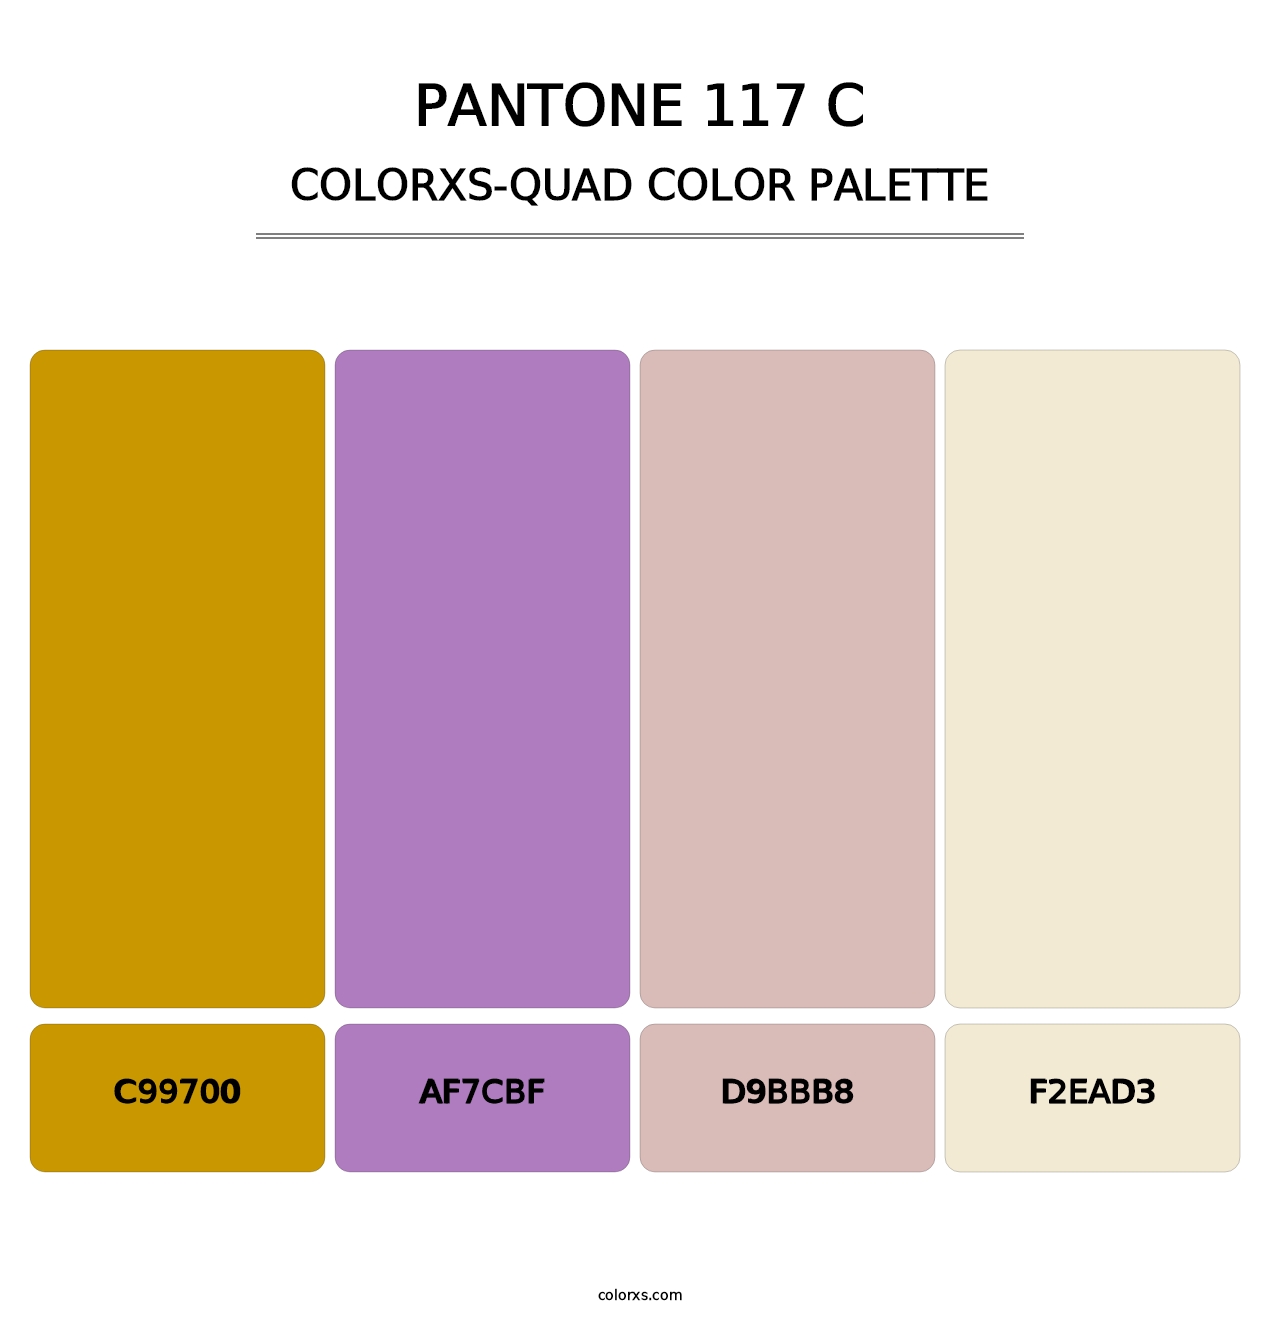 PANTONE 117 C - Colorxs Quad Palette